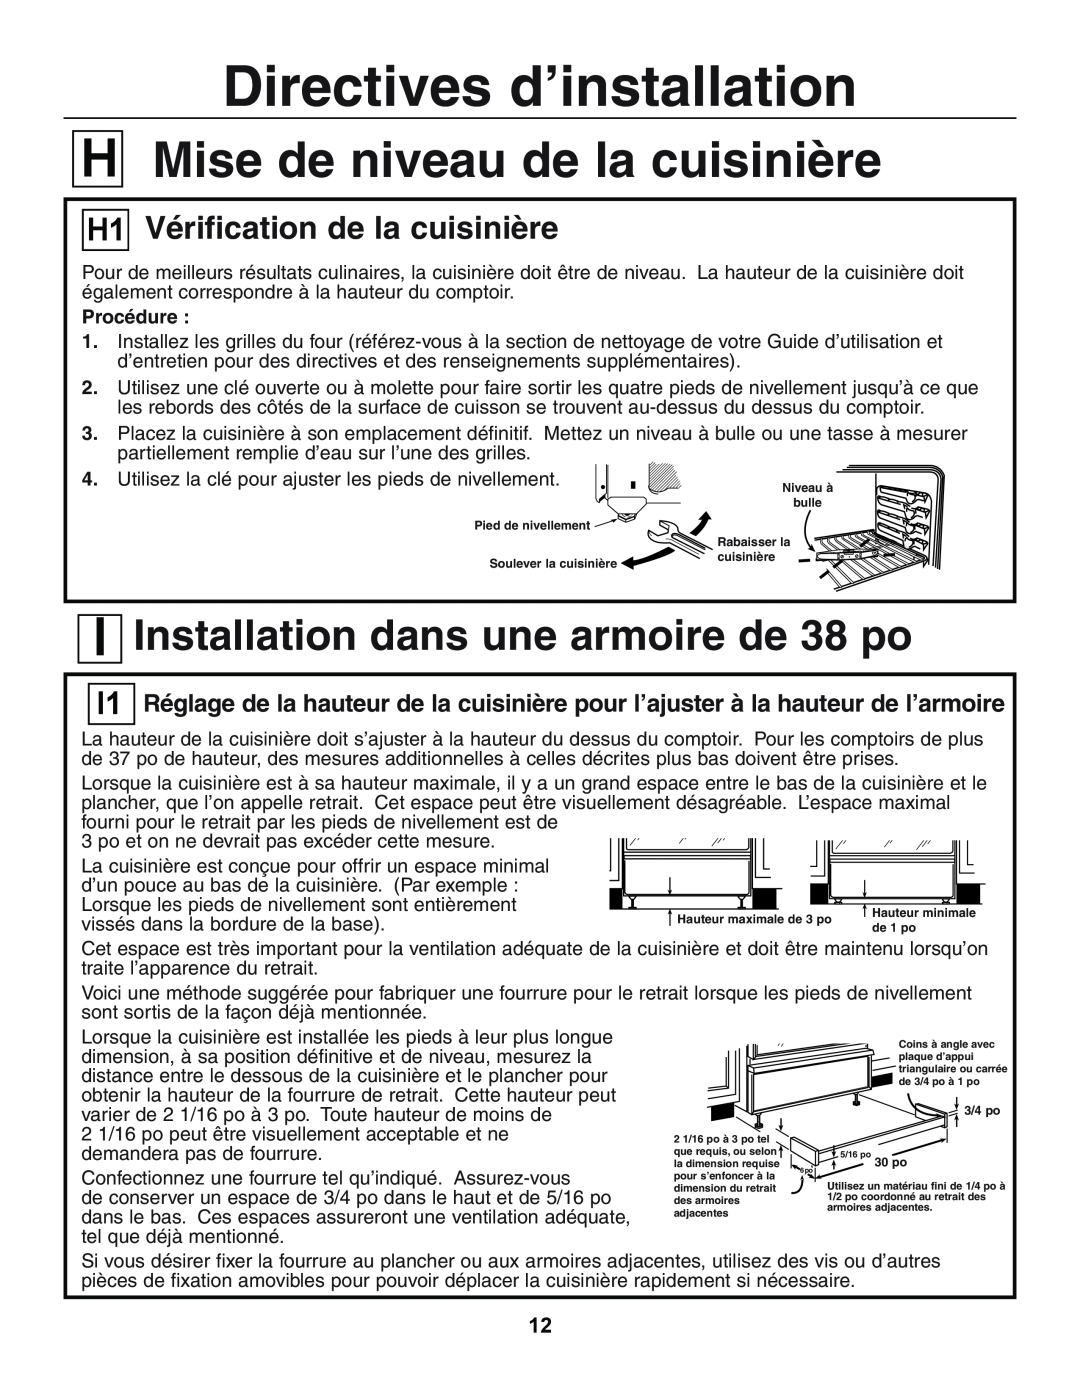 GE JGSP23 manual VérificationChecking the Rangede la cuisinière, LevelingMise detheniveauRange de la cuisinière, Procédure 